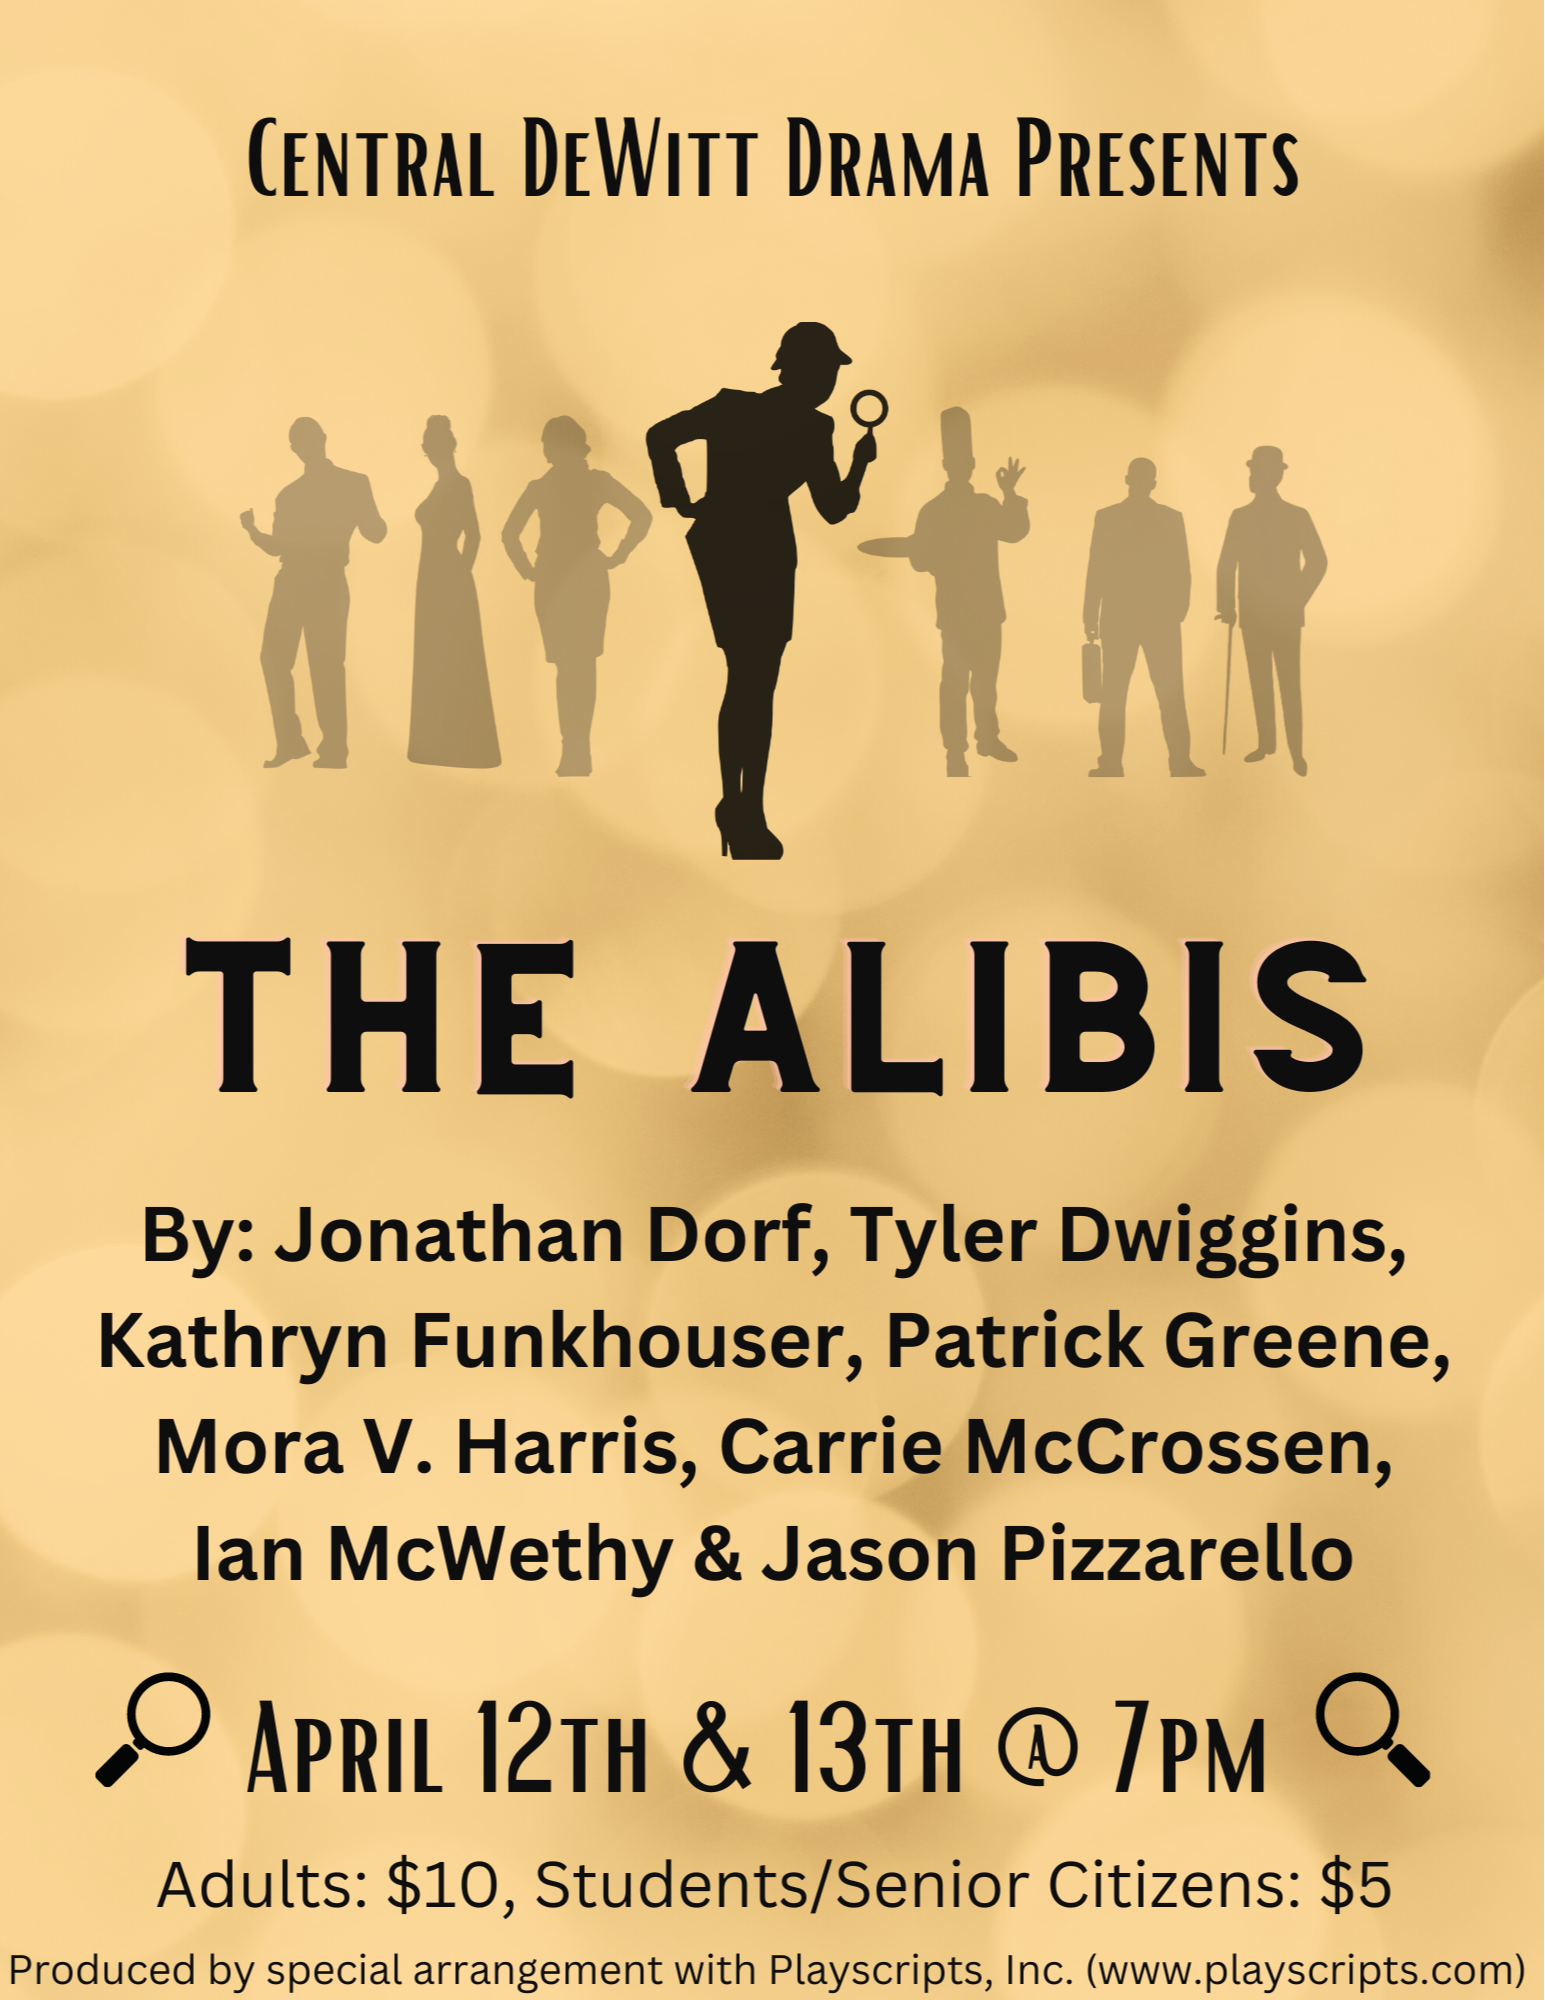 The Alibis